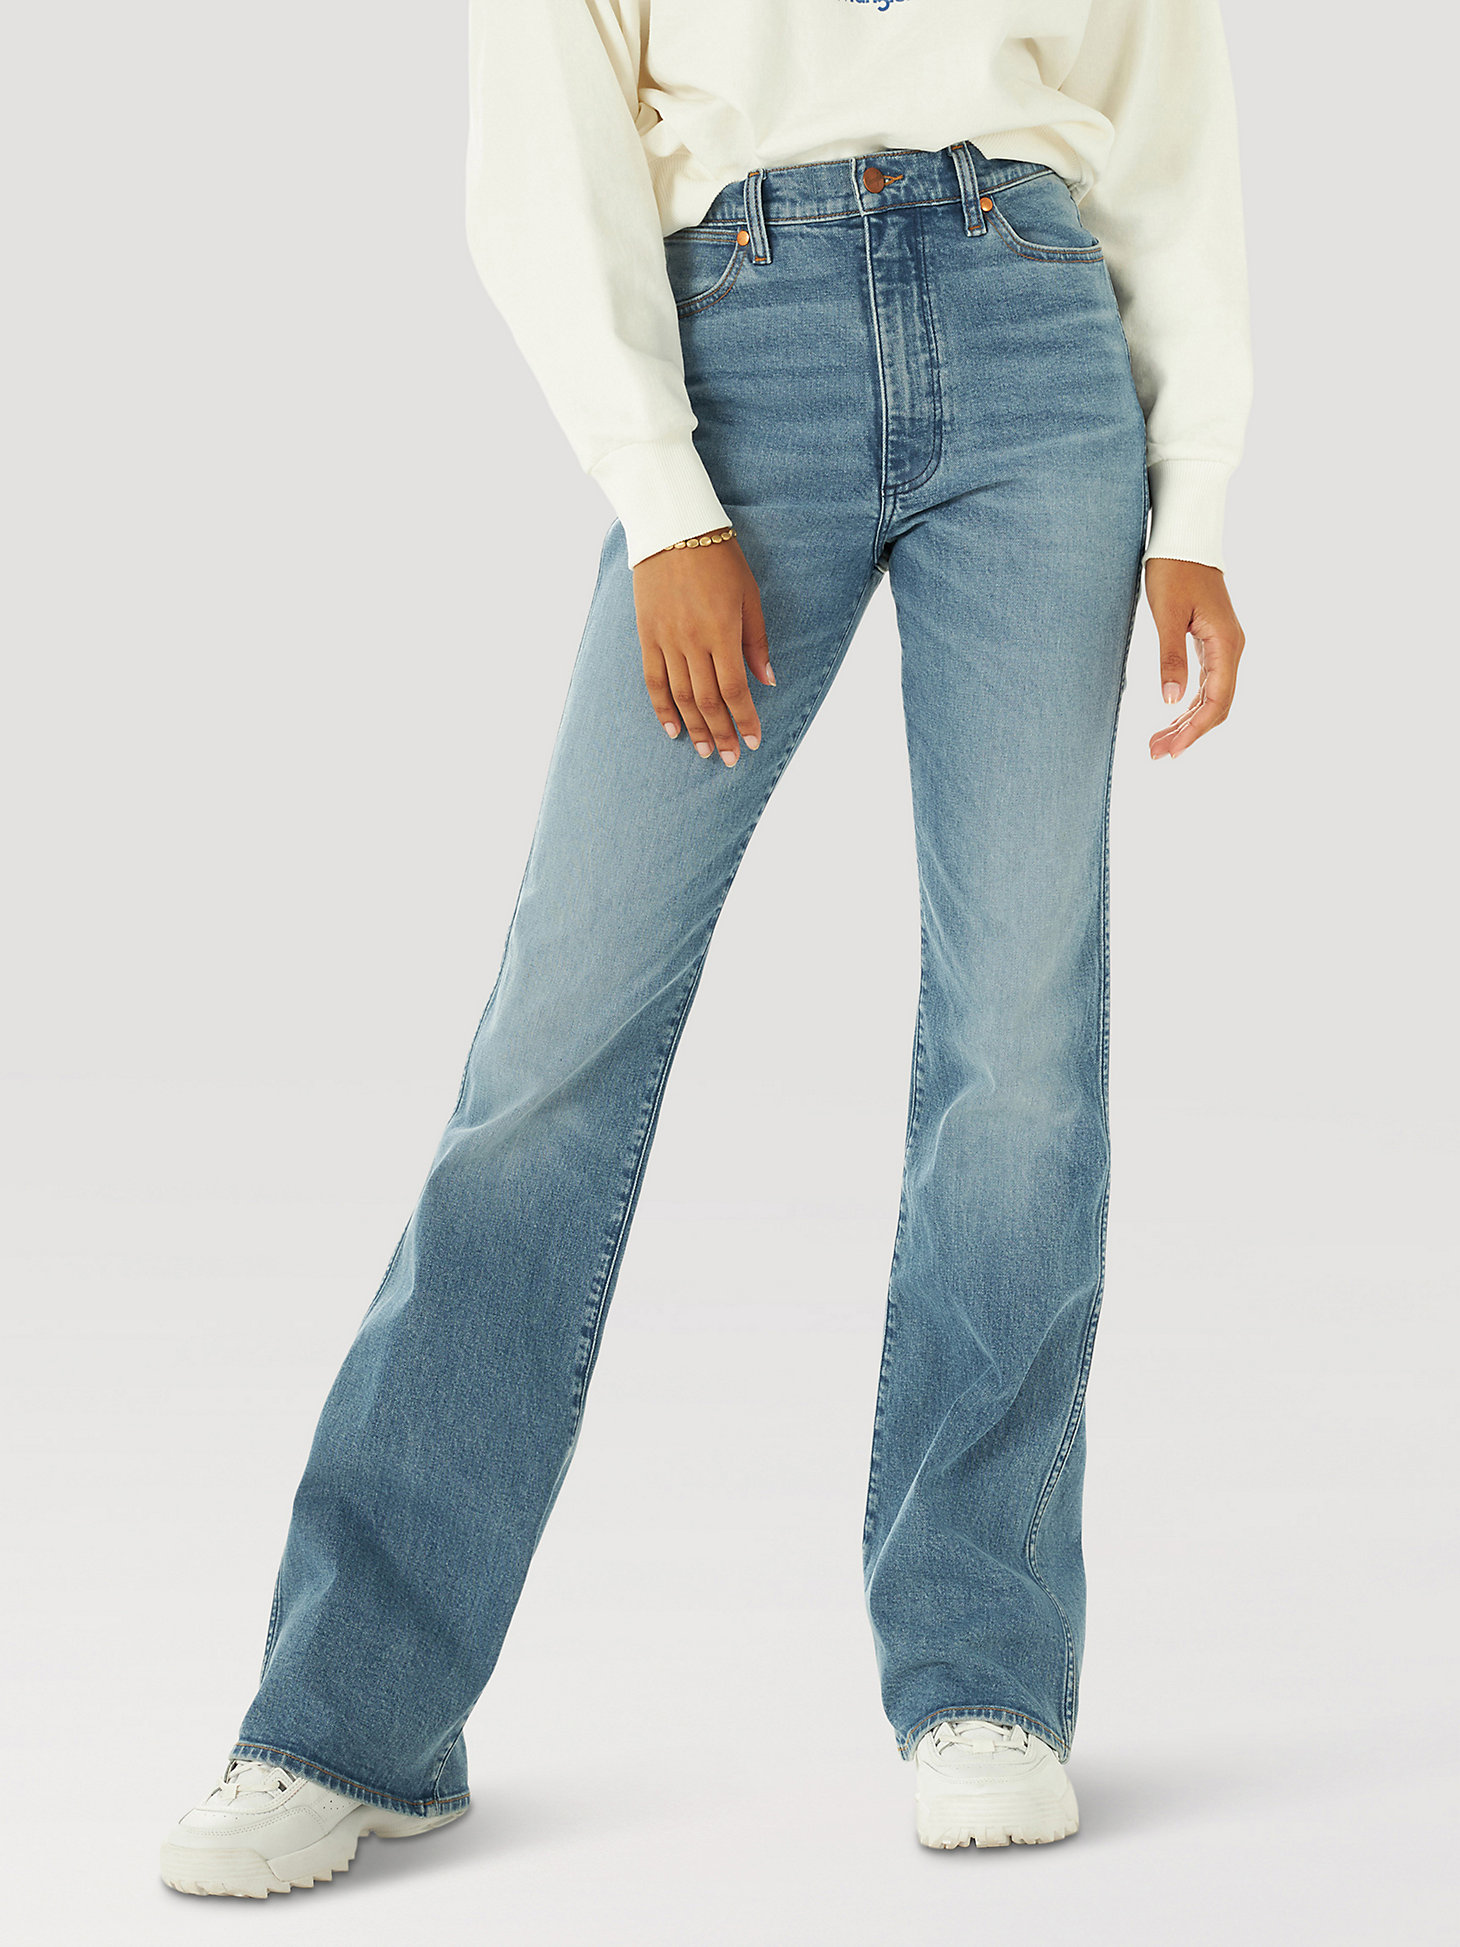 Arriba 74+ imagen westward bootcut jeans wrangler